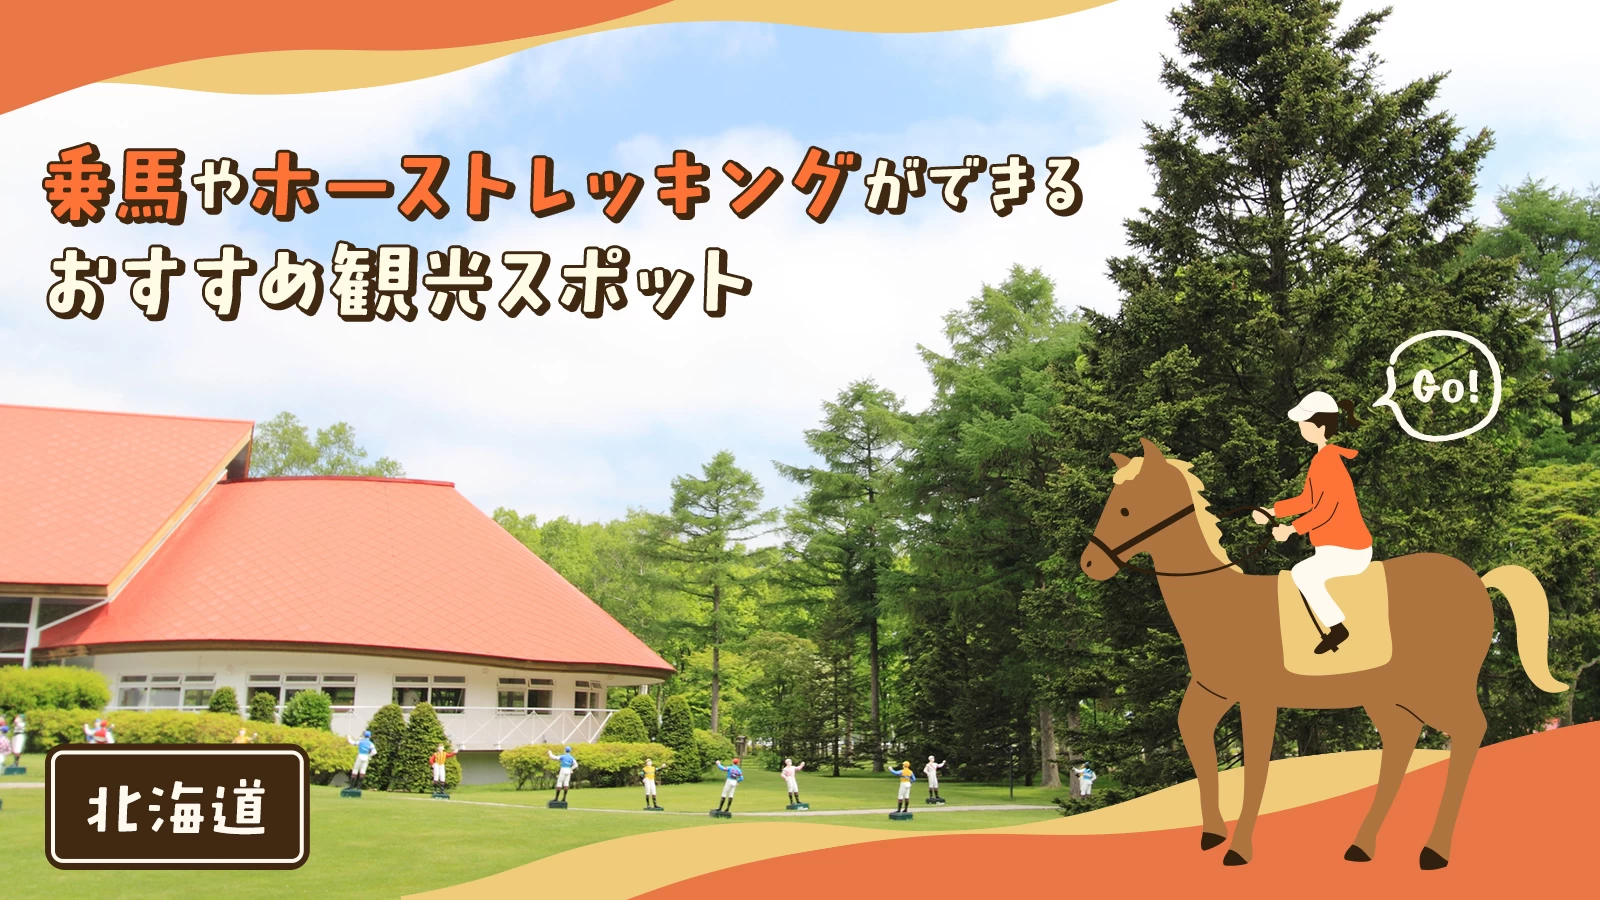 【北海道】乗馬やホーストレッキングができるおすすめ観光スポット15選